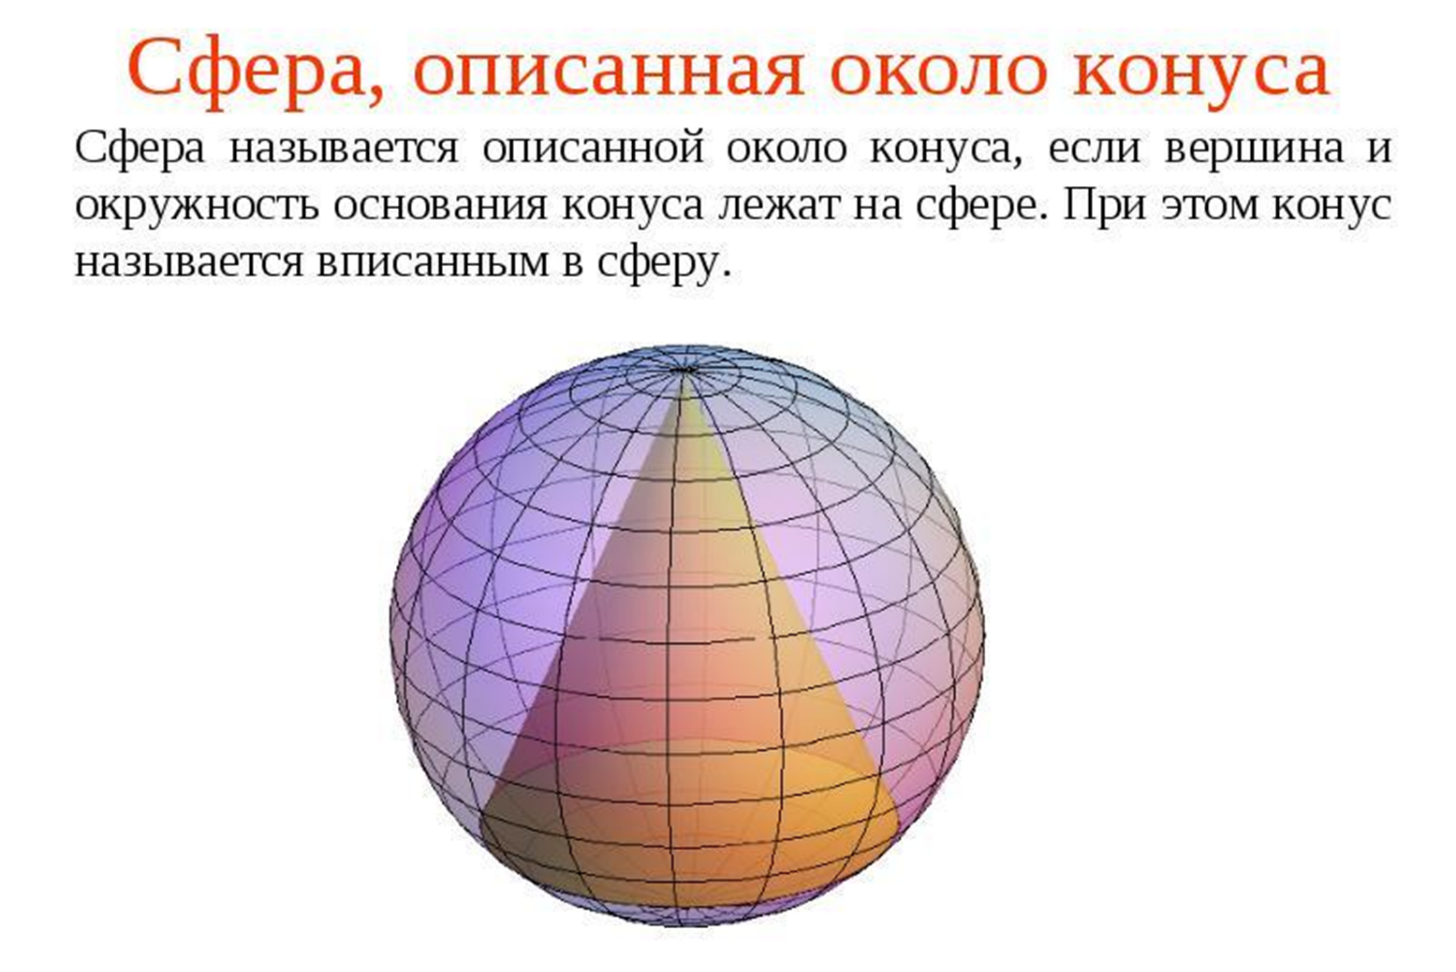 В шар вписан конус основания 10. Около конуса описана сфера. Сфера описанная вокруг конуса. Сфера называется описанной около конуса. Описанный Консус вокруг сферы.